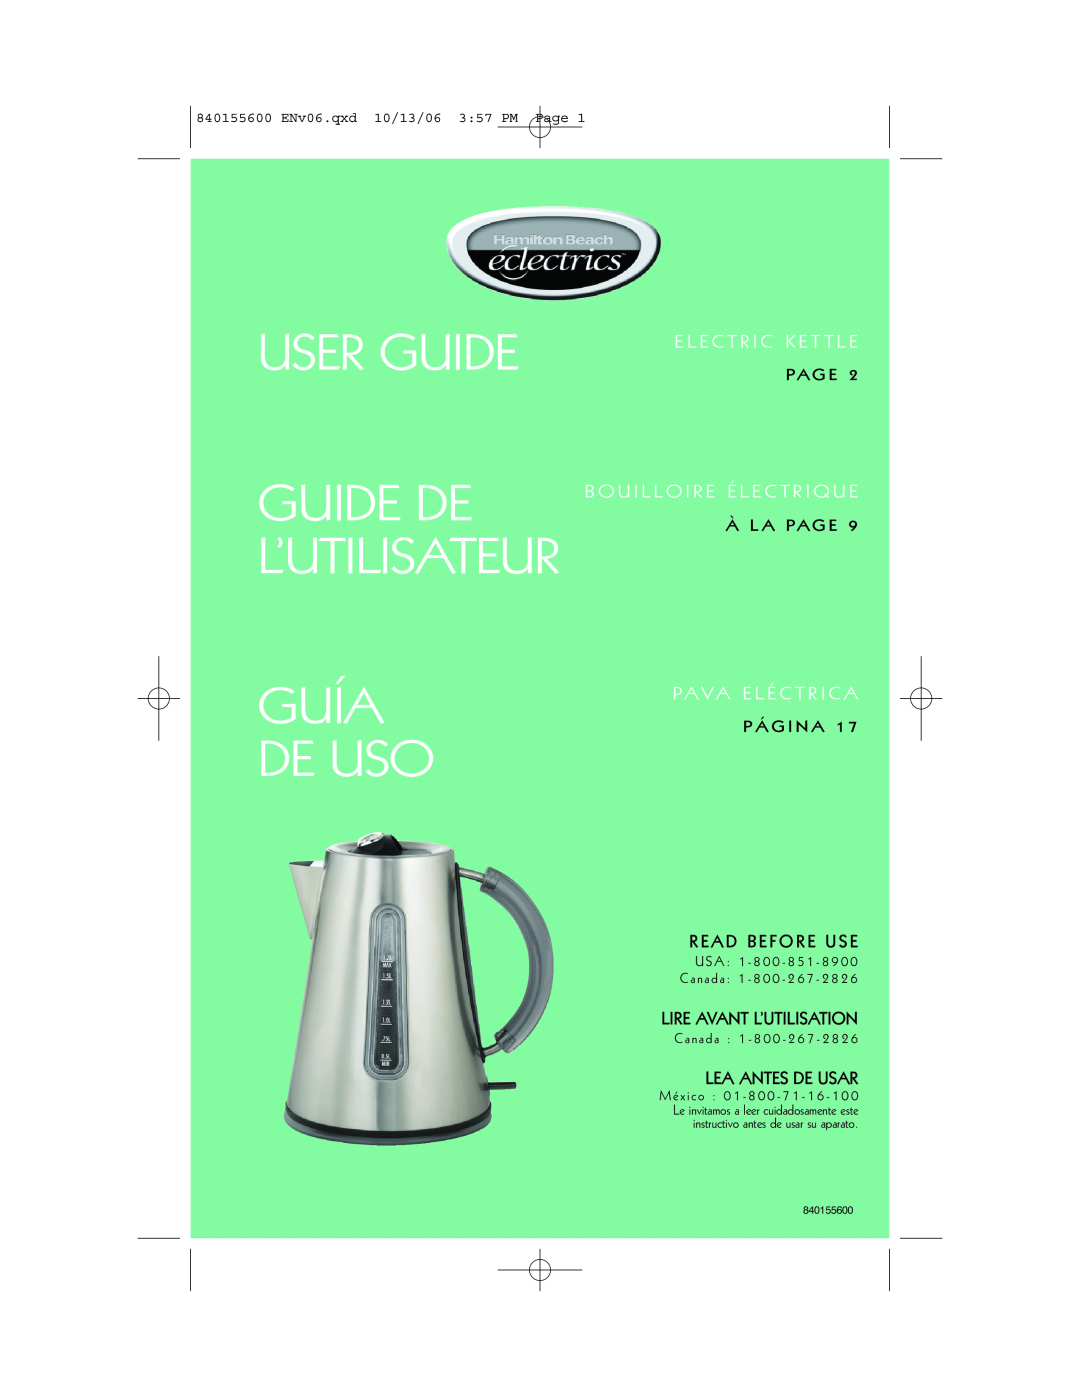 Hamilton Beach 40990 manual User Guide, Guía De Uso, Guide De L’Utilisateur, E L E C T R I C K E T T L E, Read Before Use 